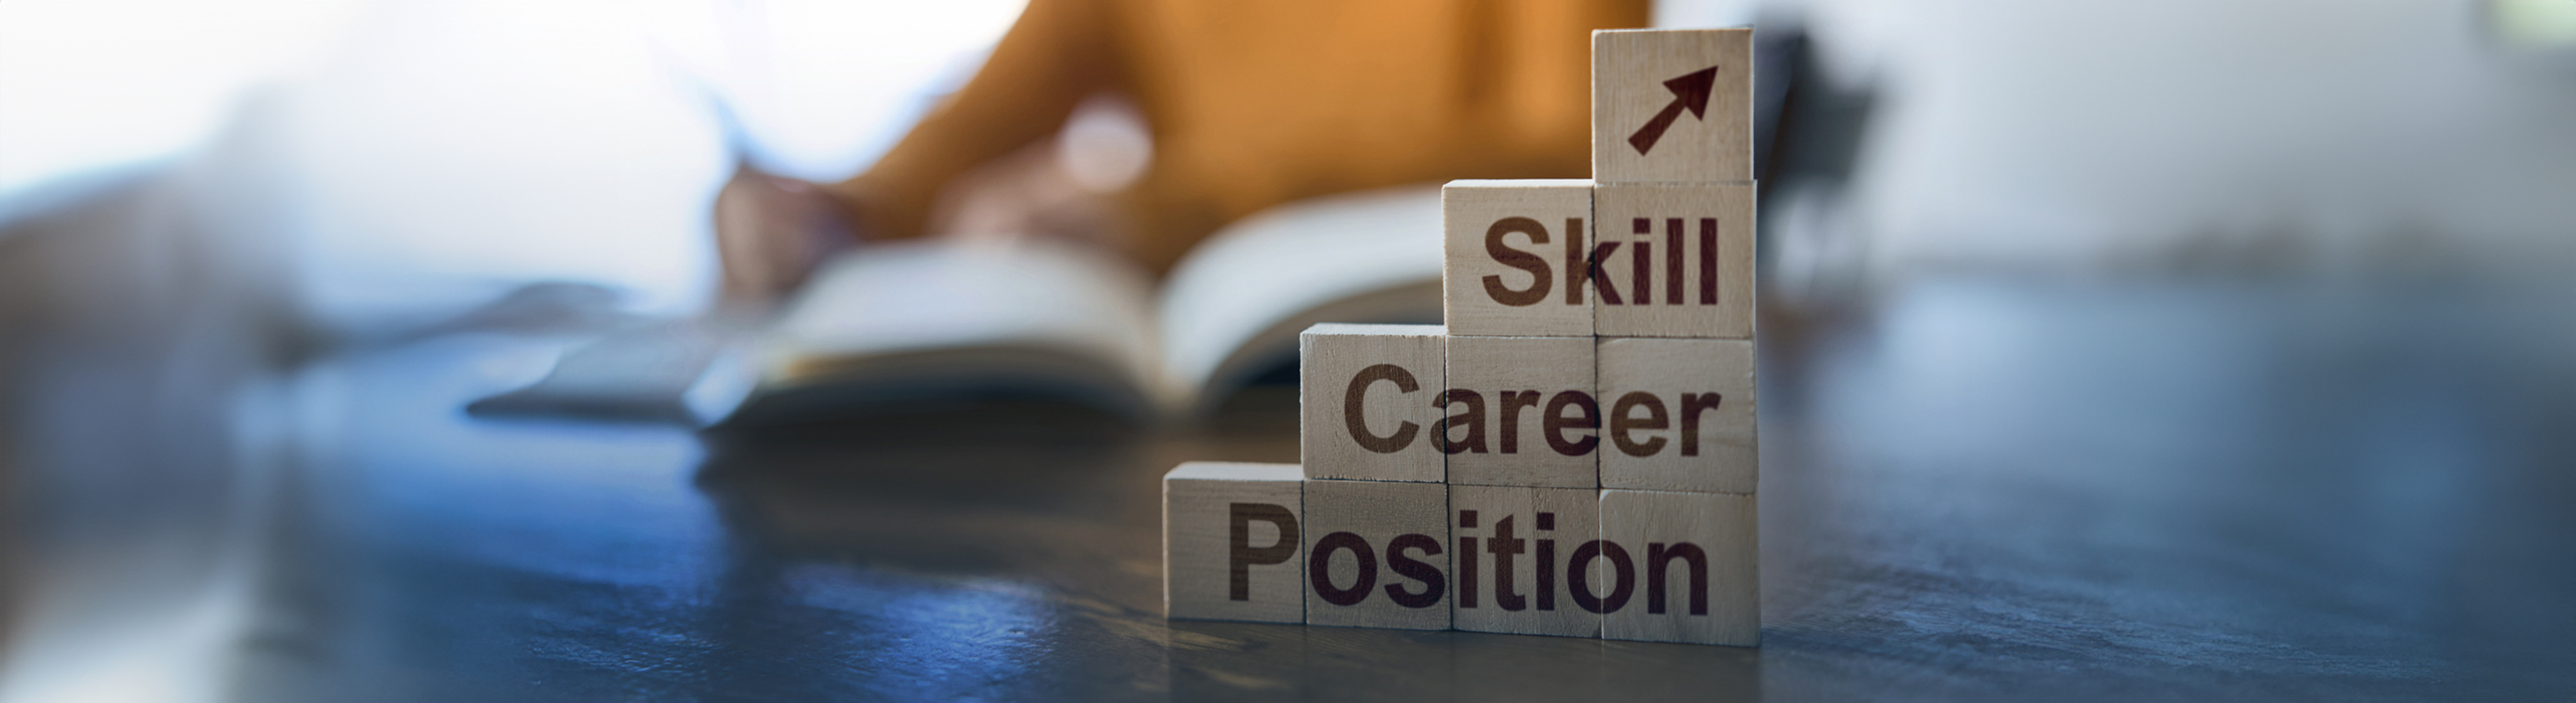 Skill career position blocks.